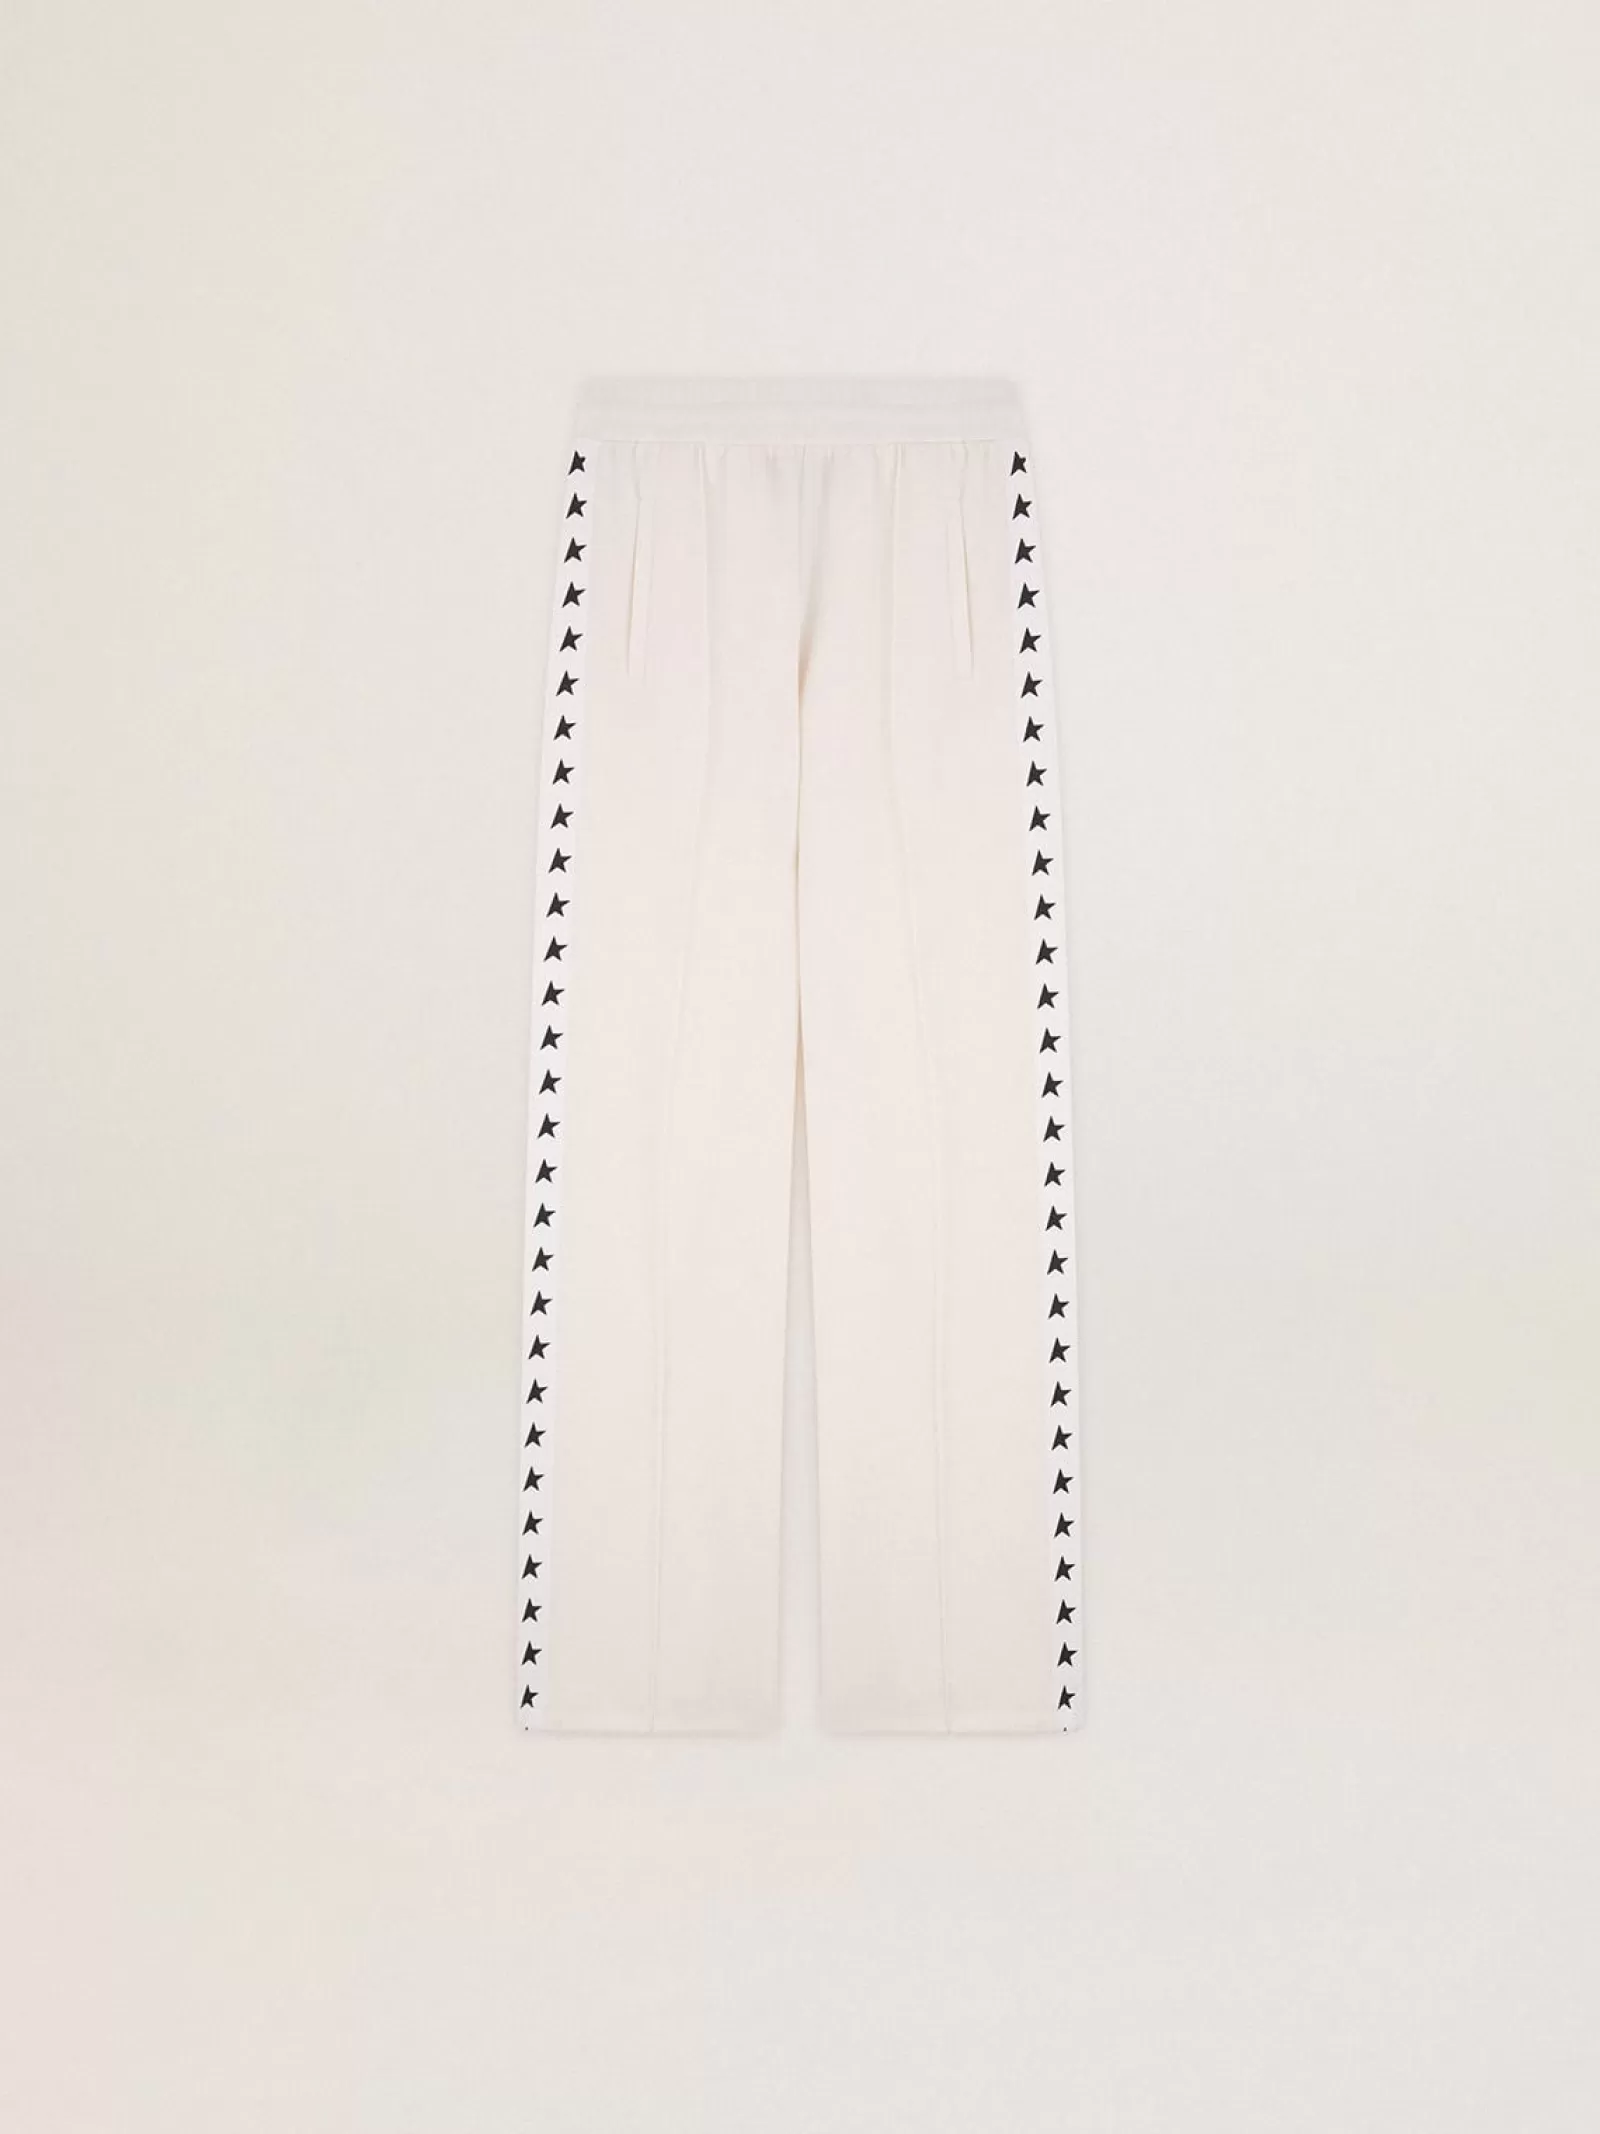 Pantalon de jogging blanc pour femme avec étoiles sur les côtés | Golden Goose Store